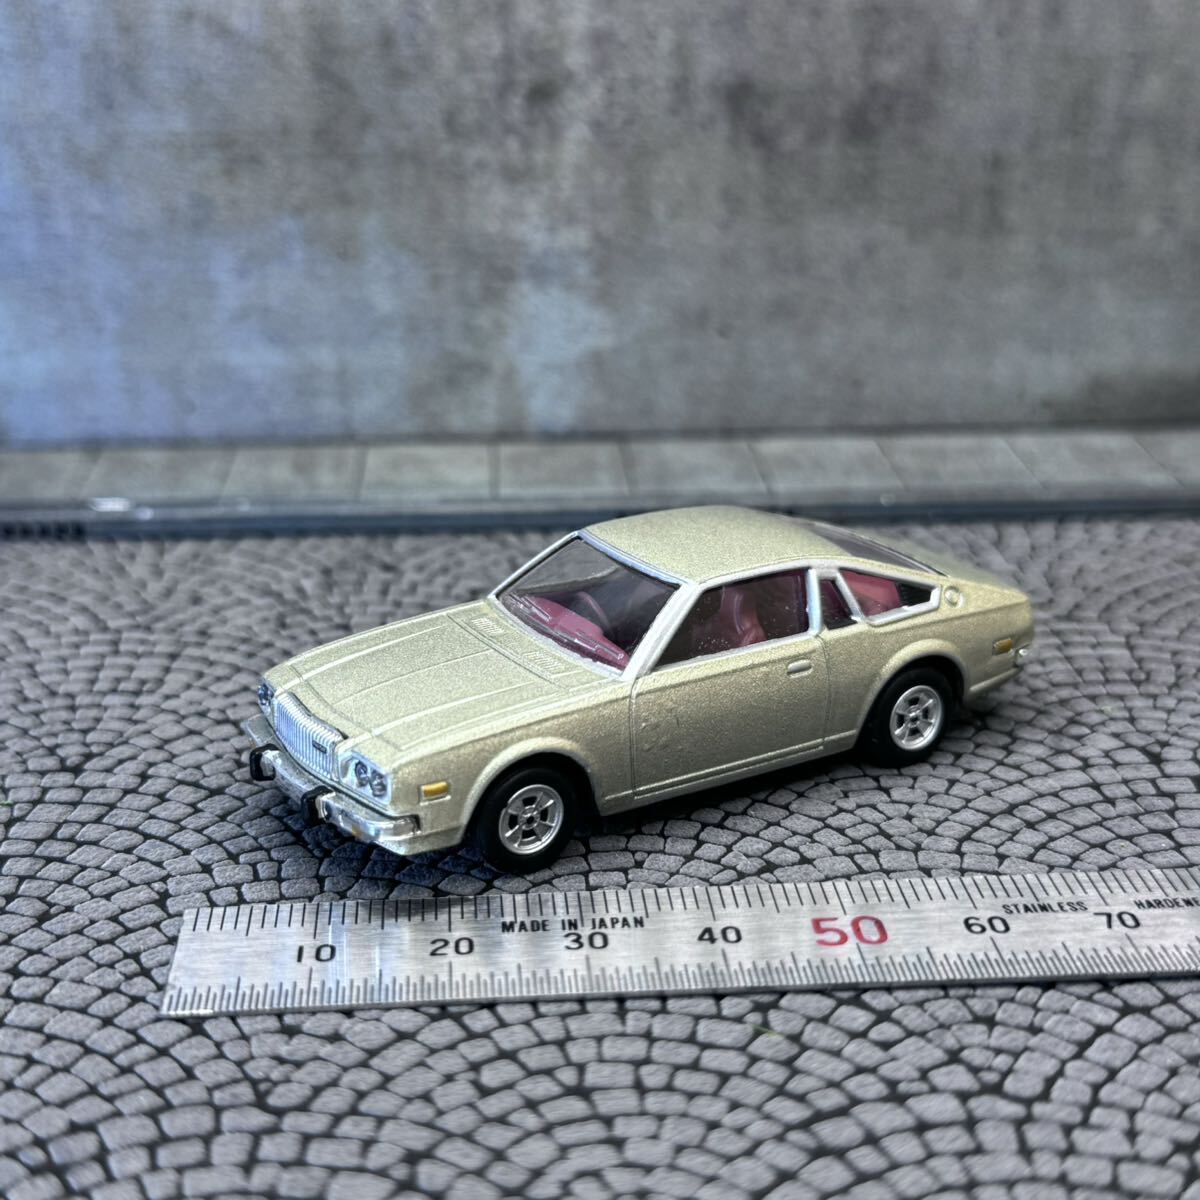 【CJ-671】1/64 スケール マツダ コスモ AP シャンパンゴールド 1975 絶版名車 コナミ ミニカー_画像1